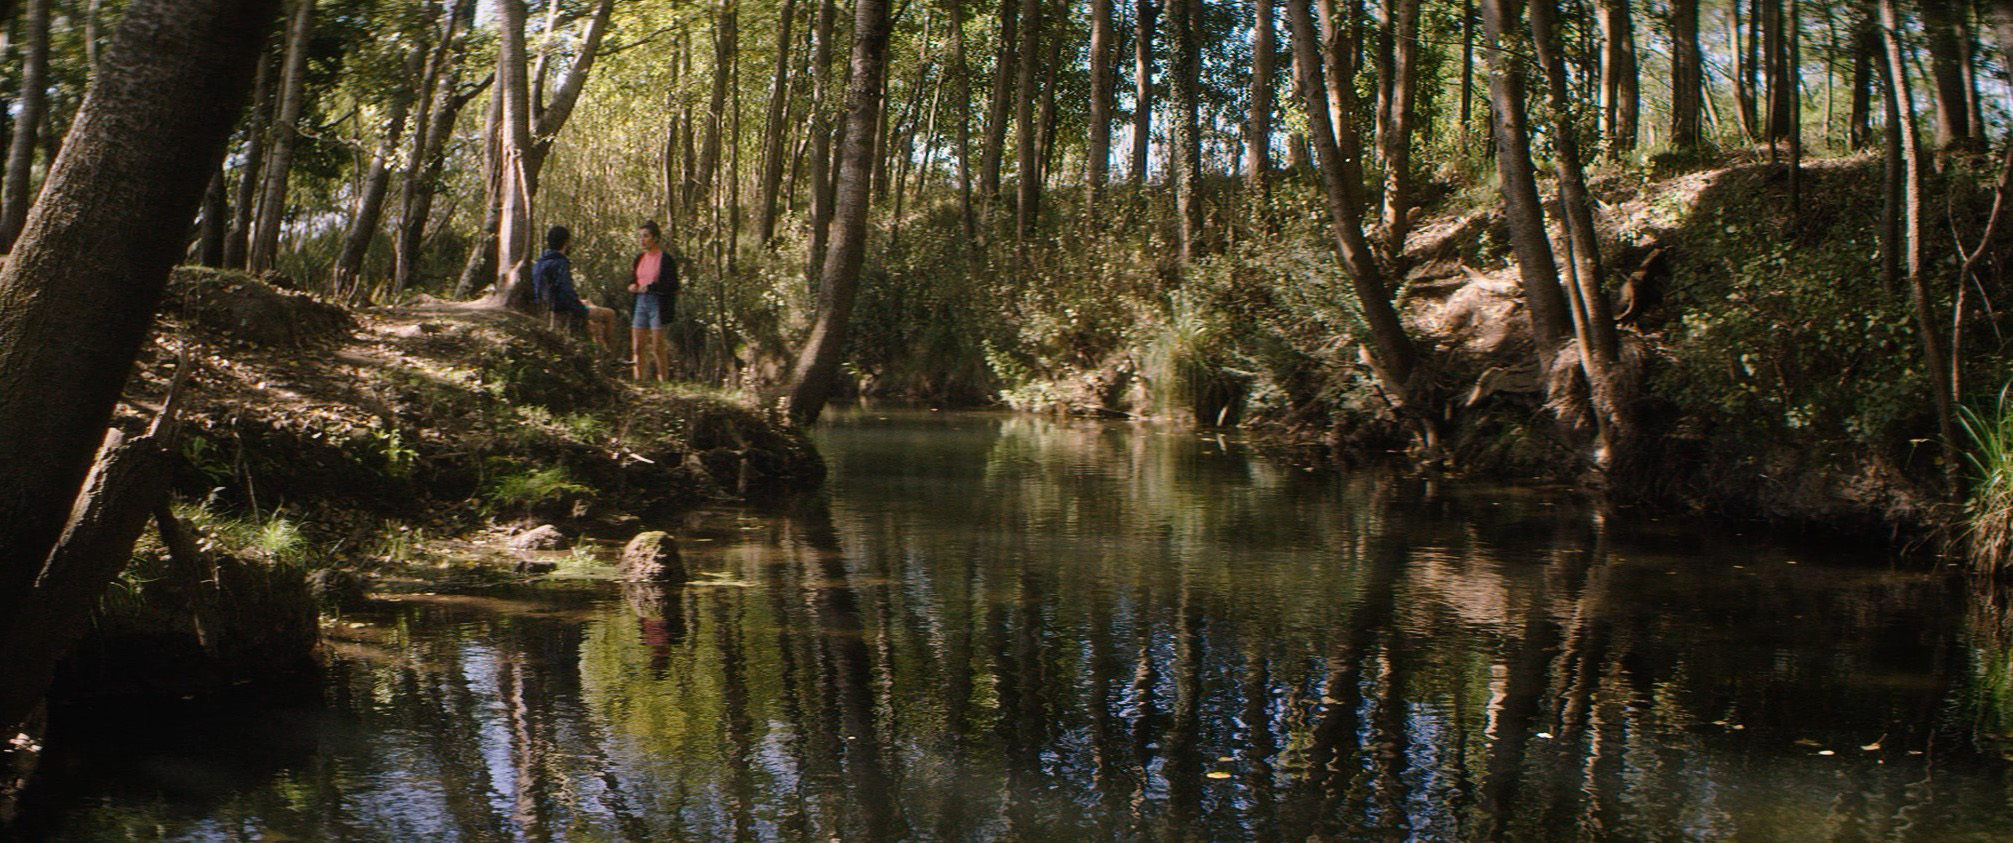 Cena do filme Os Inventados. A foto é uma paisagem de uma floresta, ensolarada, com um lago no centro. No canto, podemos ver de longe dois personagens de pé, um de frente para o outro.